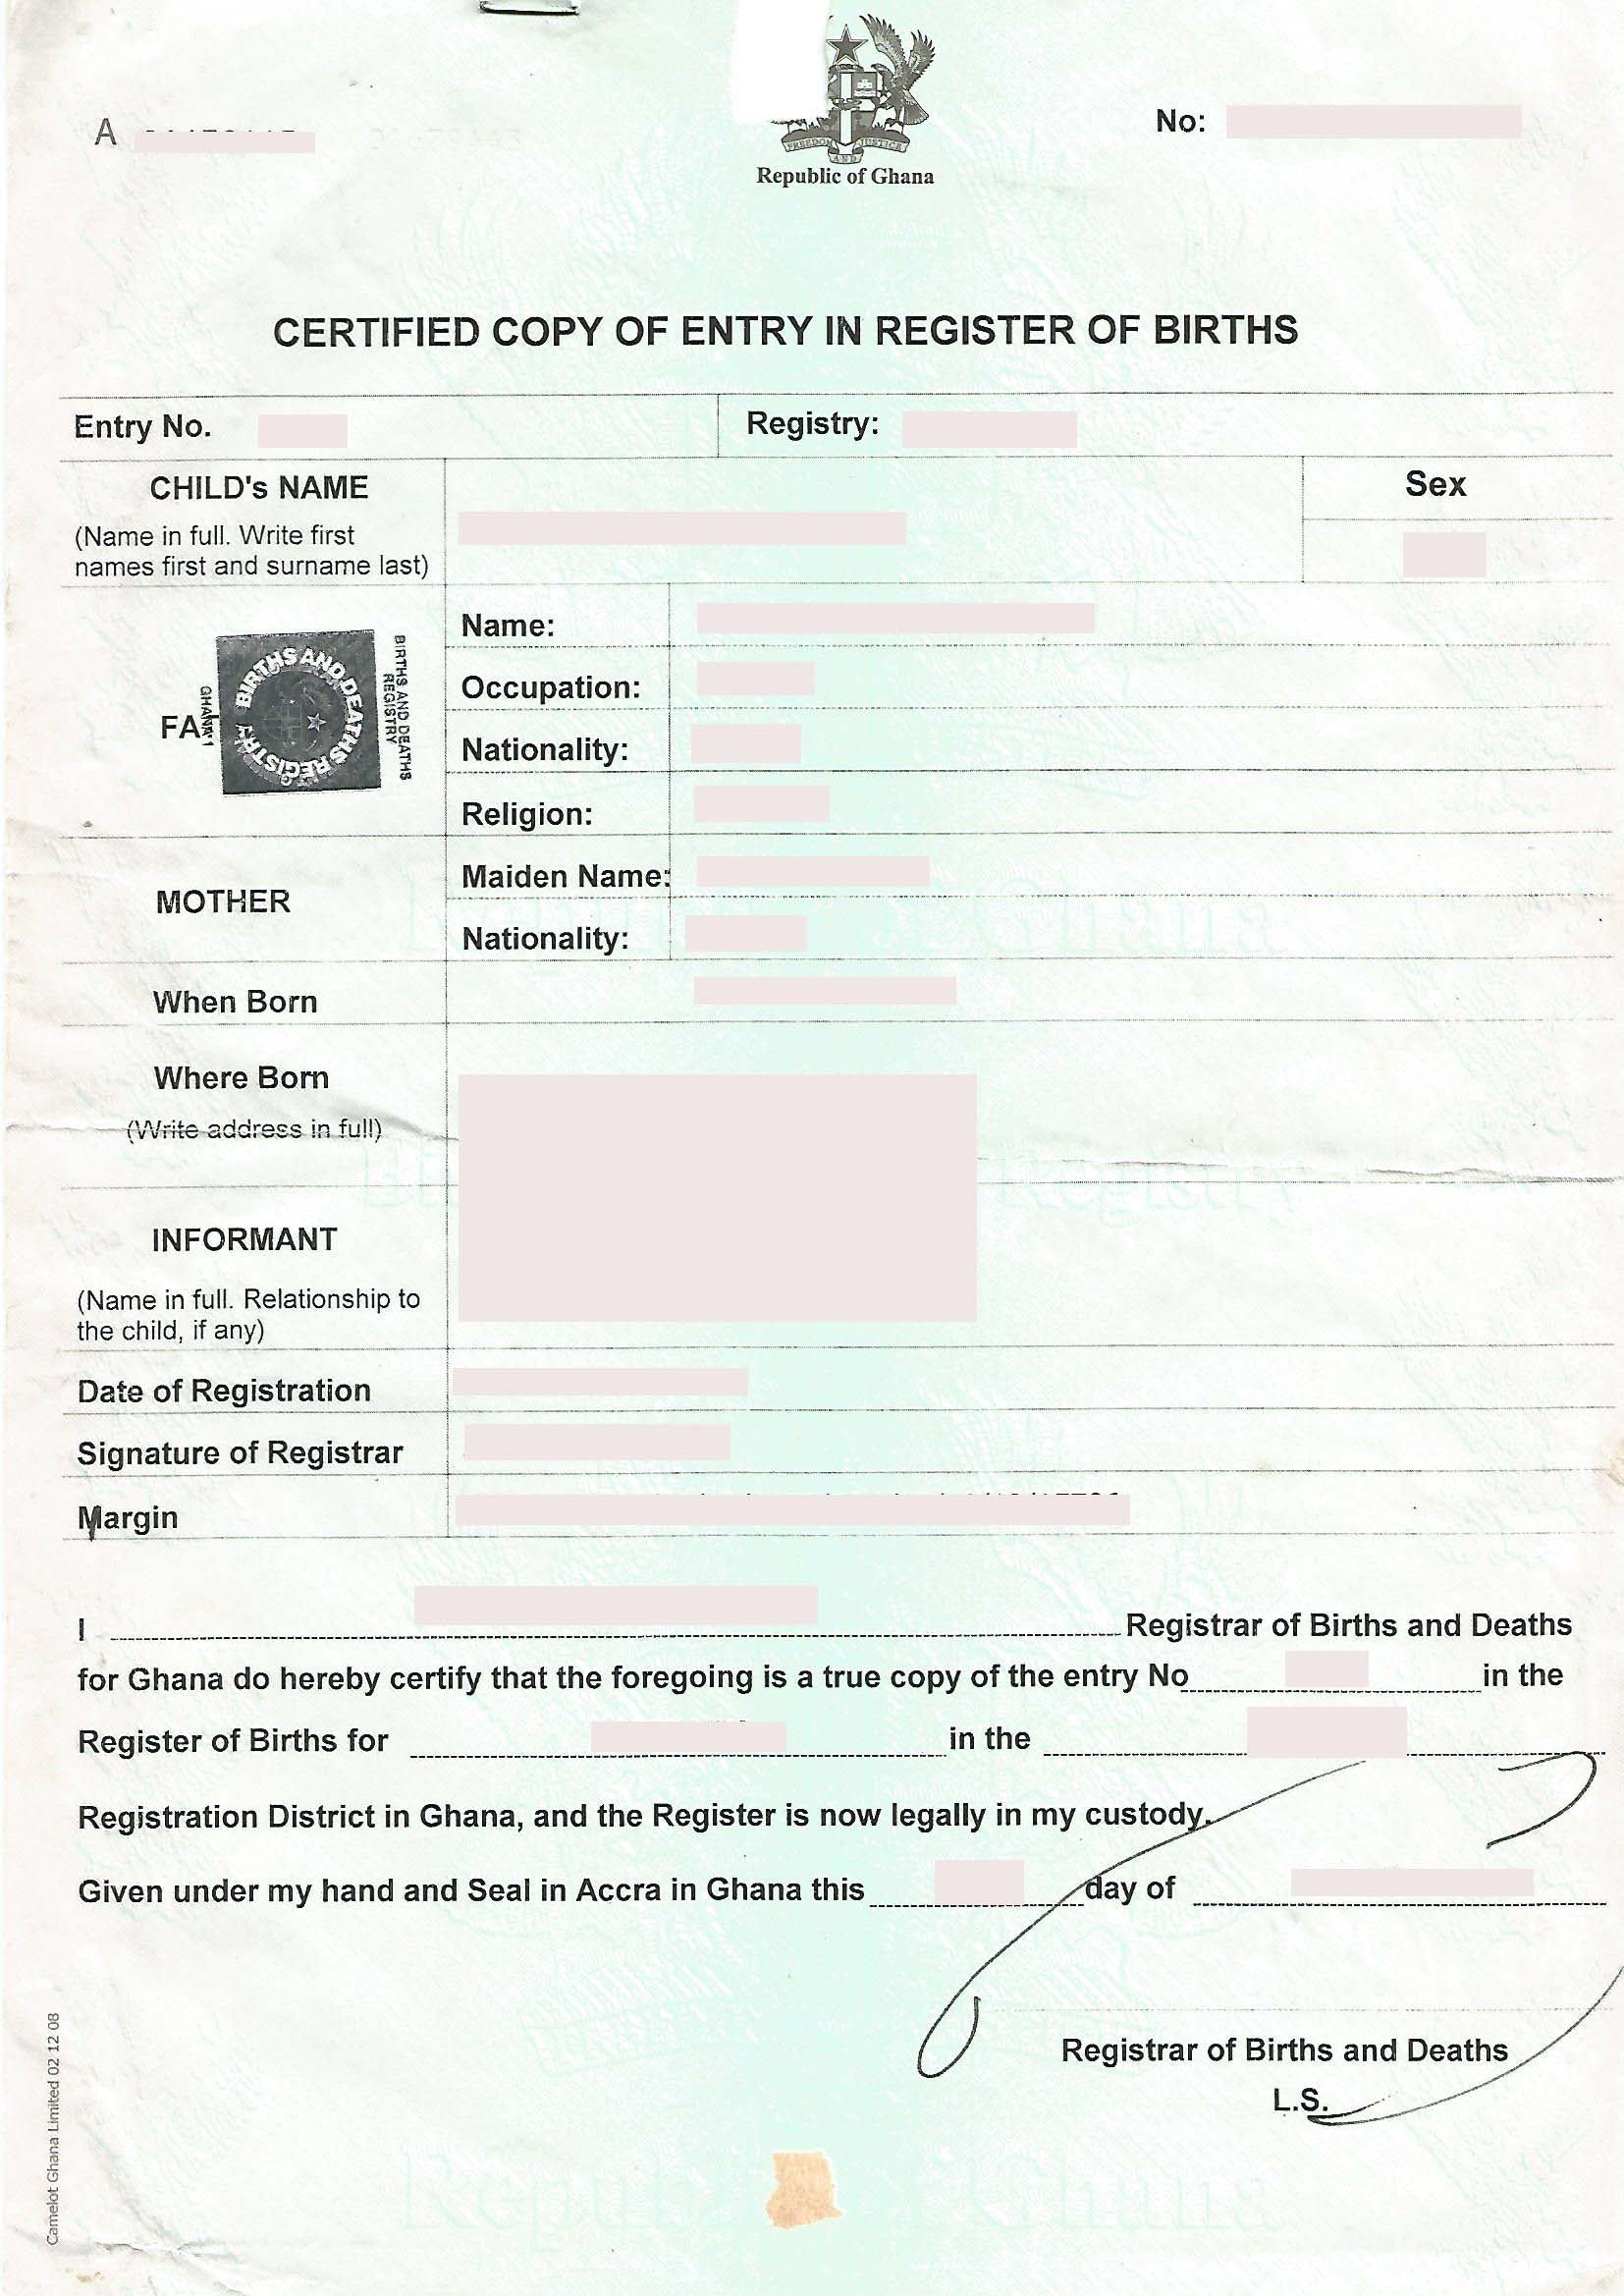 Beglaubigte Abschrift einer Eintragung aus dem Geburtenregister / Geburtsurkunde (GHA) - Certified Copy of Entry in Register of Birth - Shop-Translation.de - Übersetzungsbüro ReSartus 